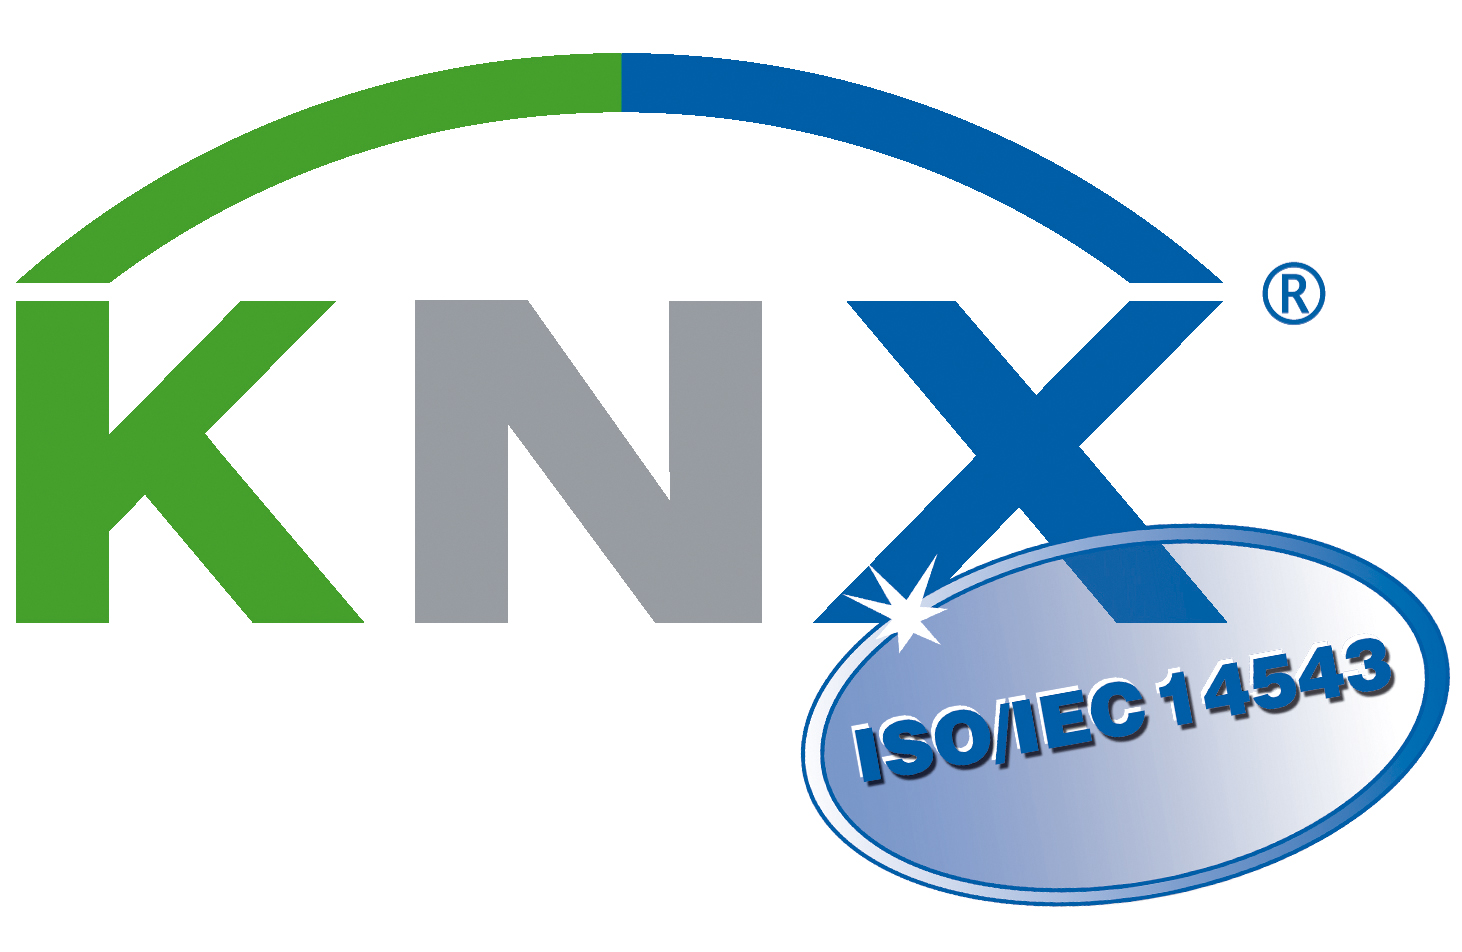 KNX_Logo